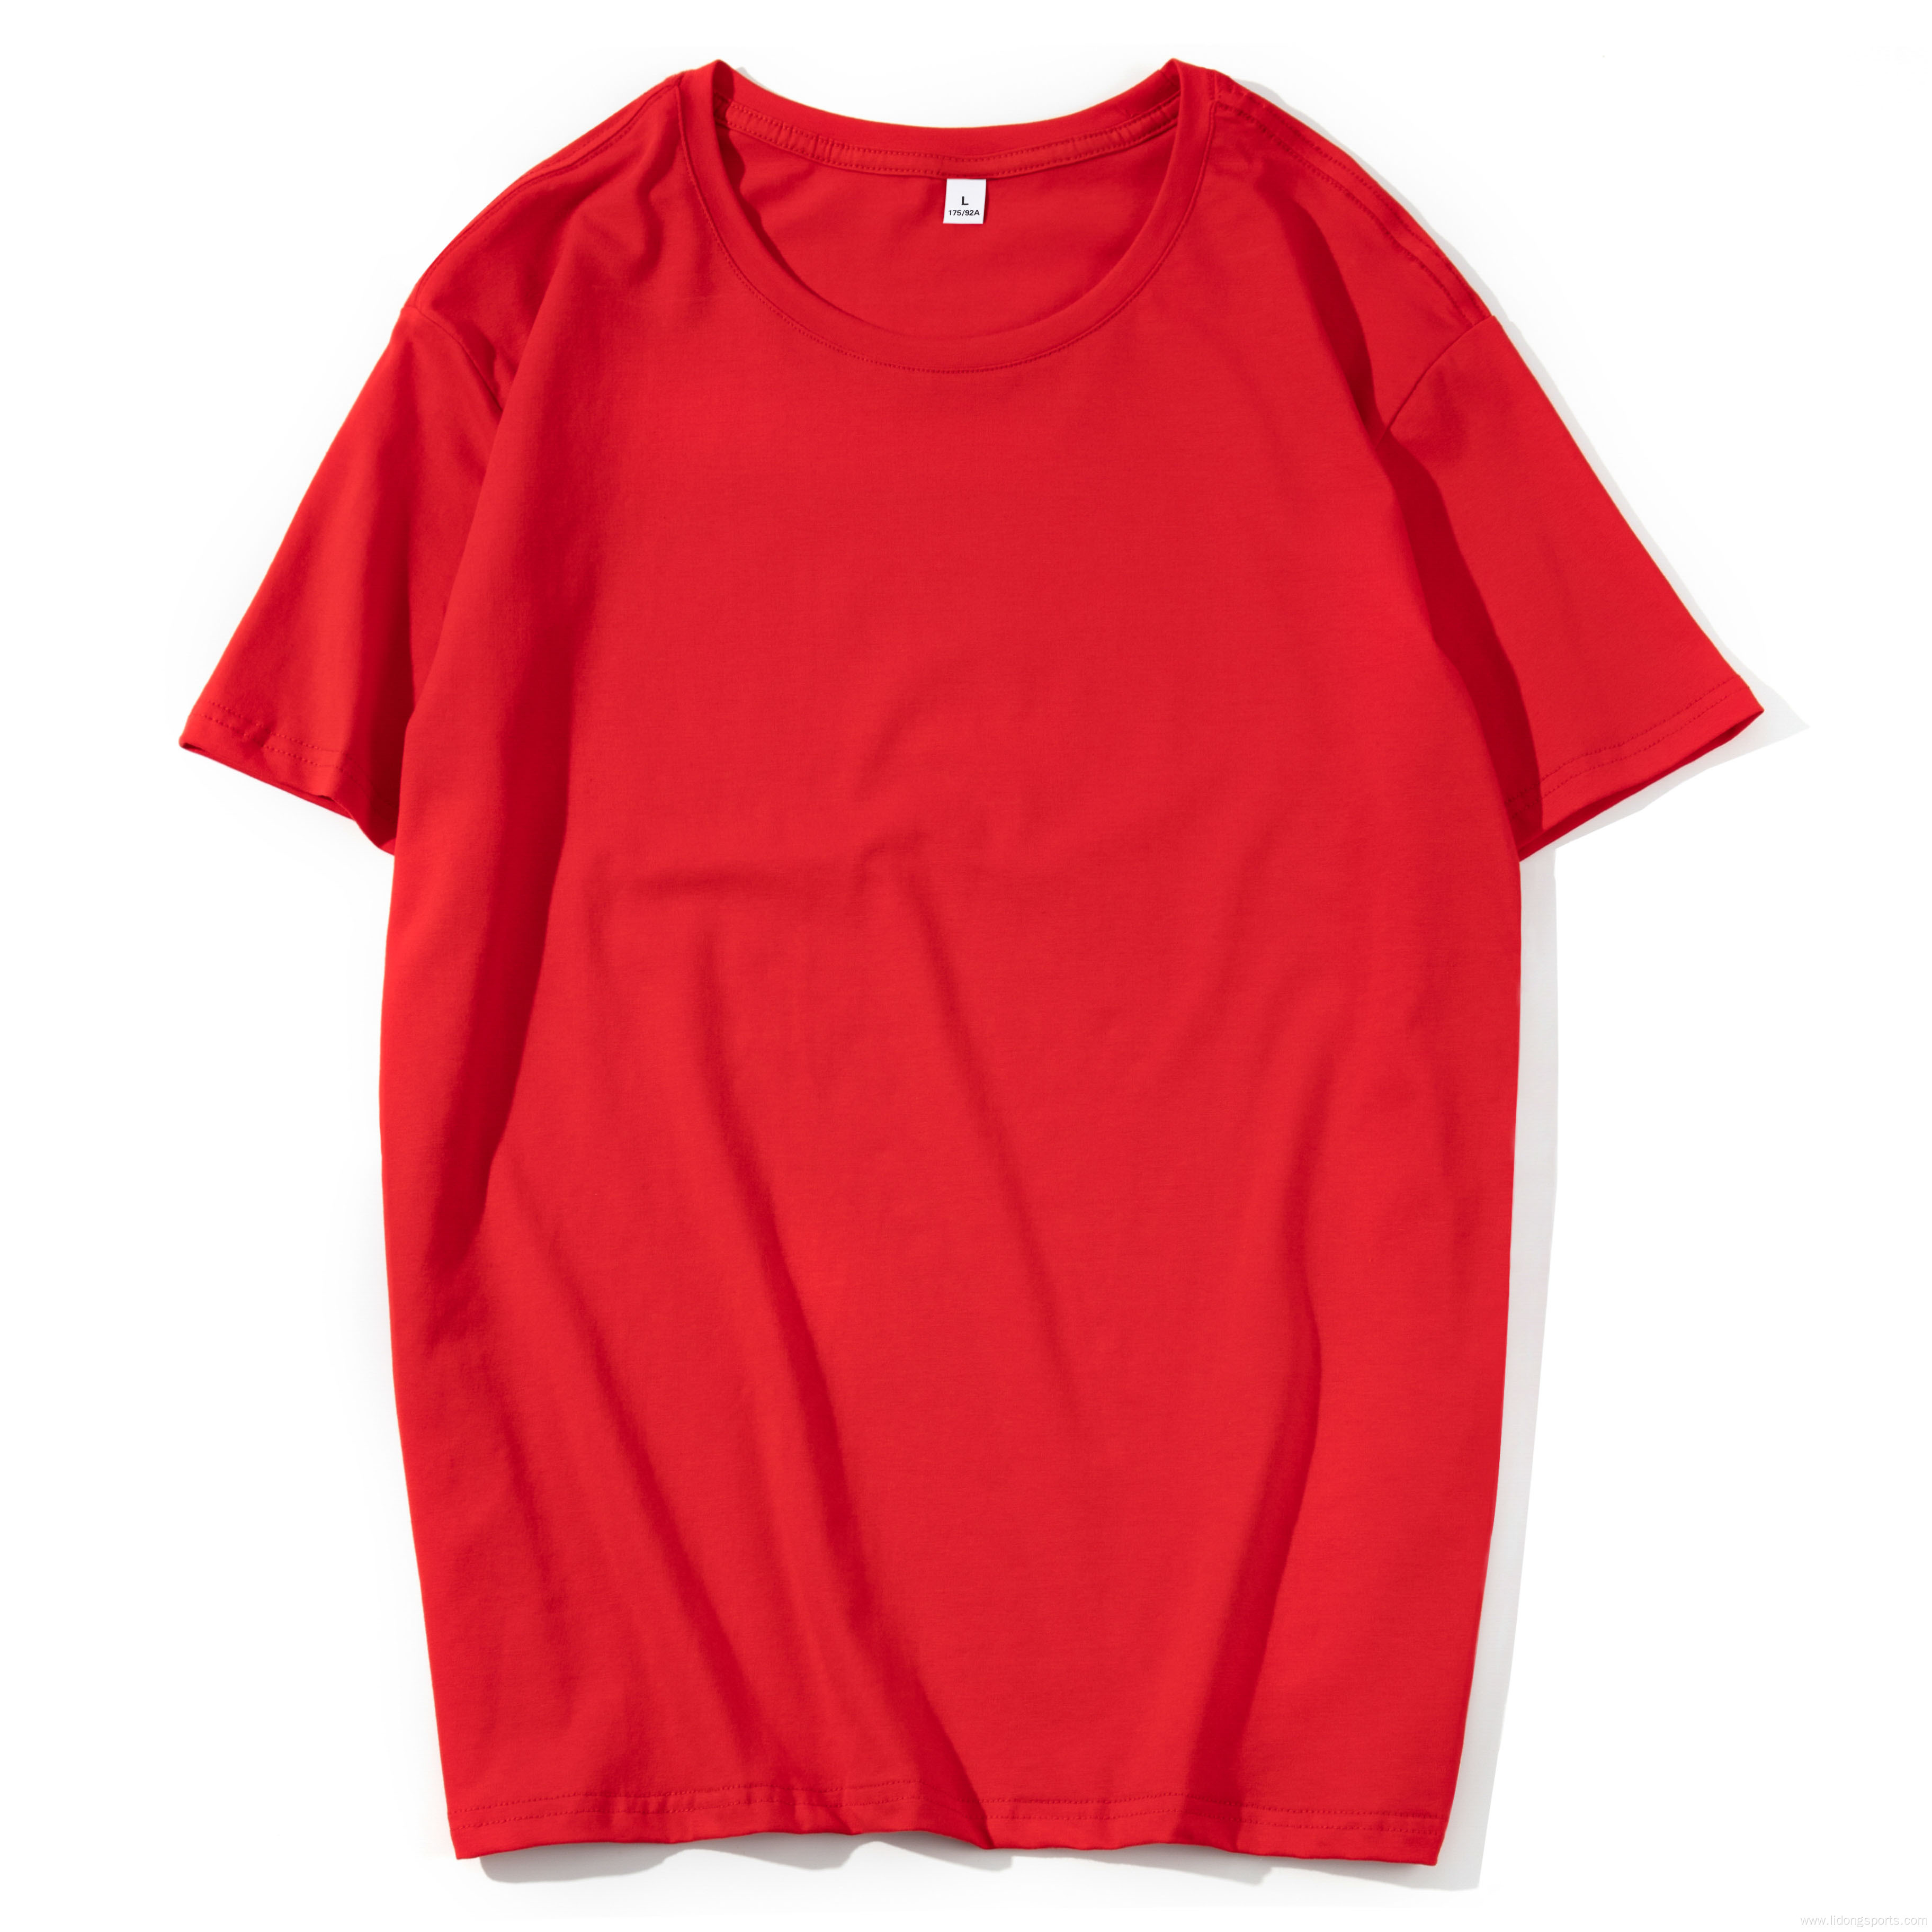 Summer Casual Unisex Plain Short Sleeve Sport T-shirt